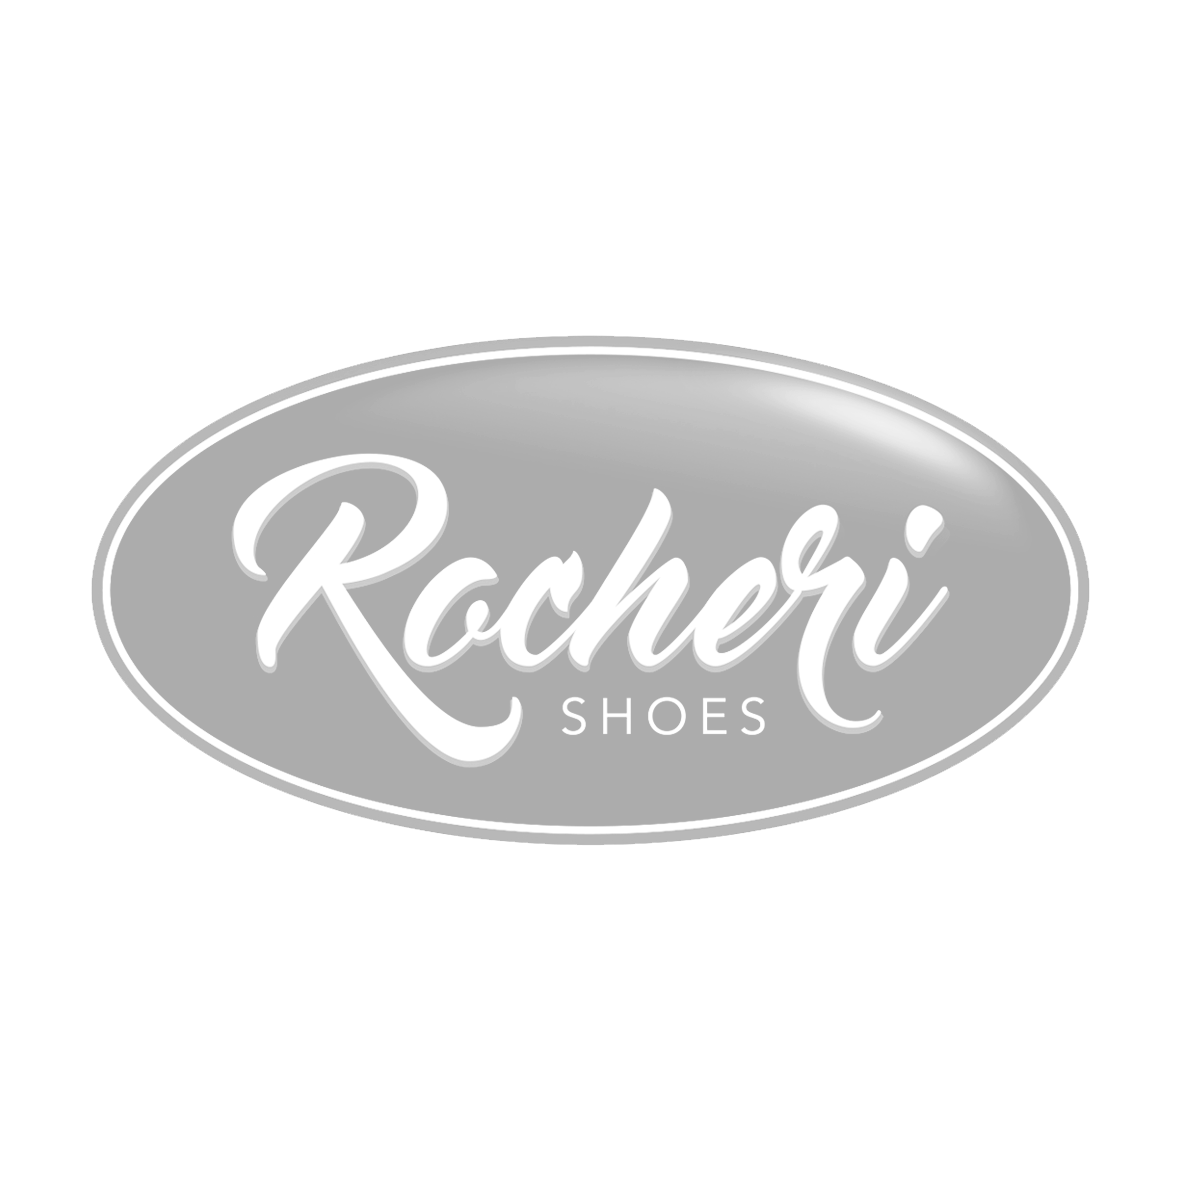 Boton Clientes 115 3 - Rocheri Shoes